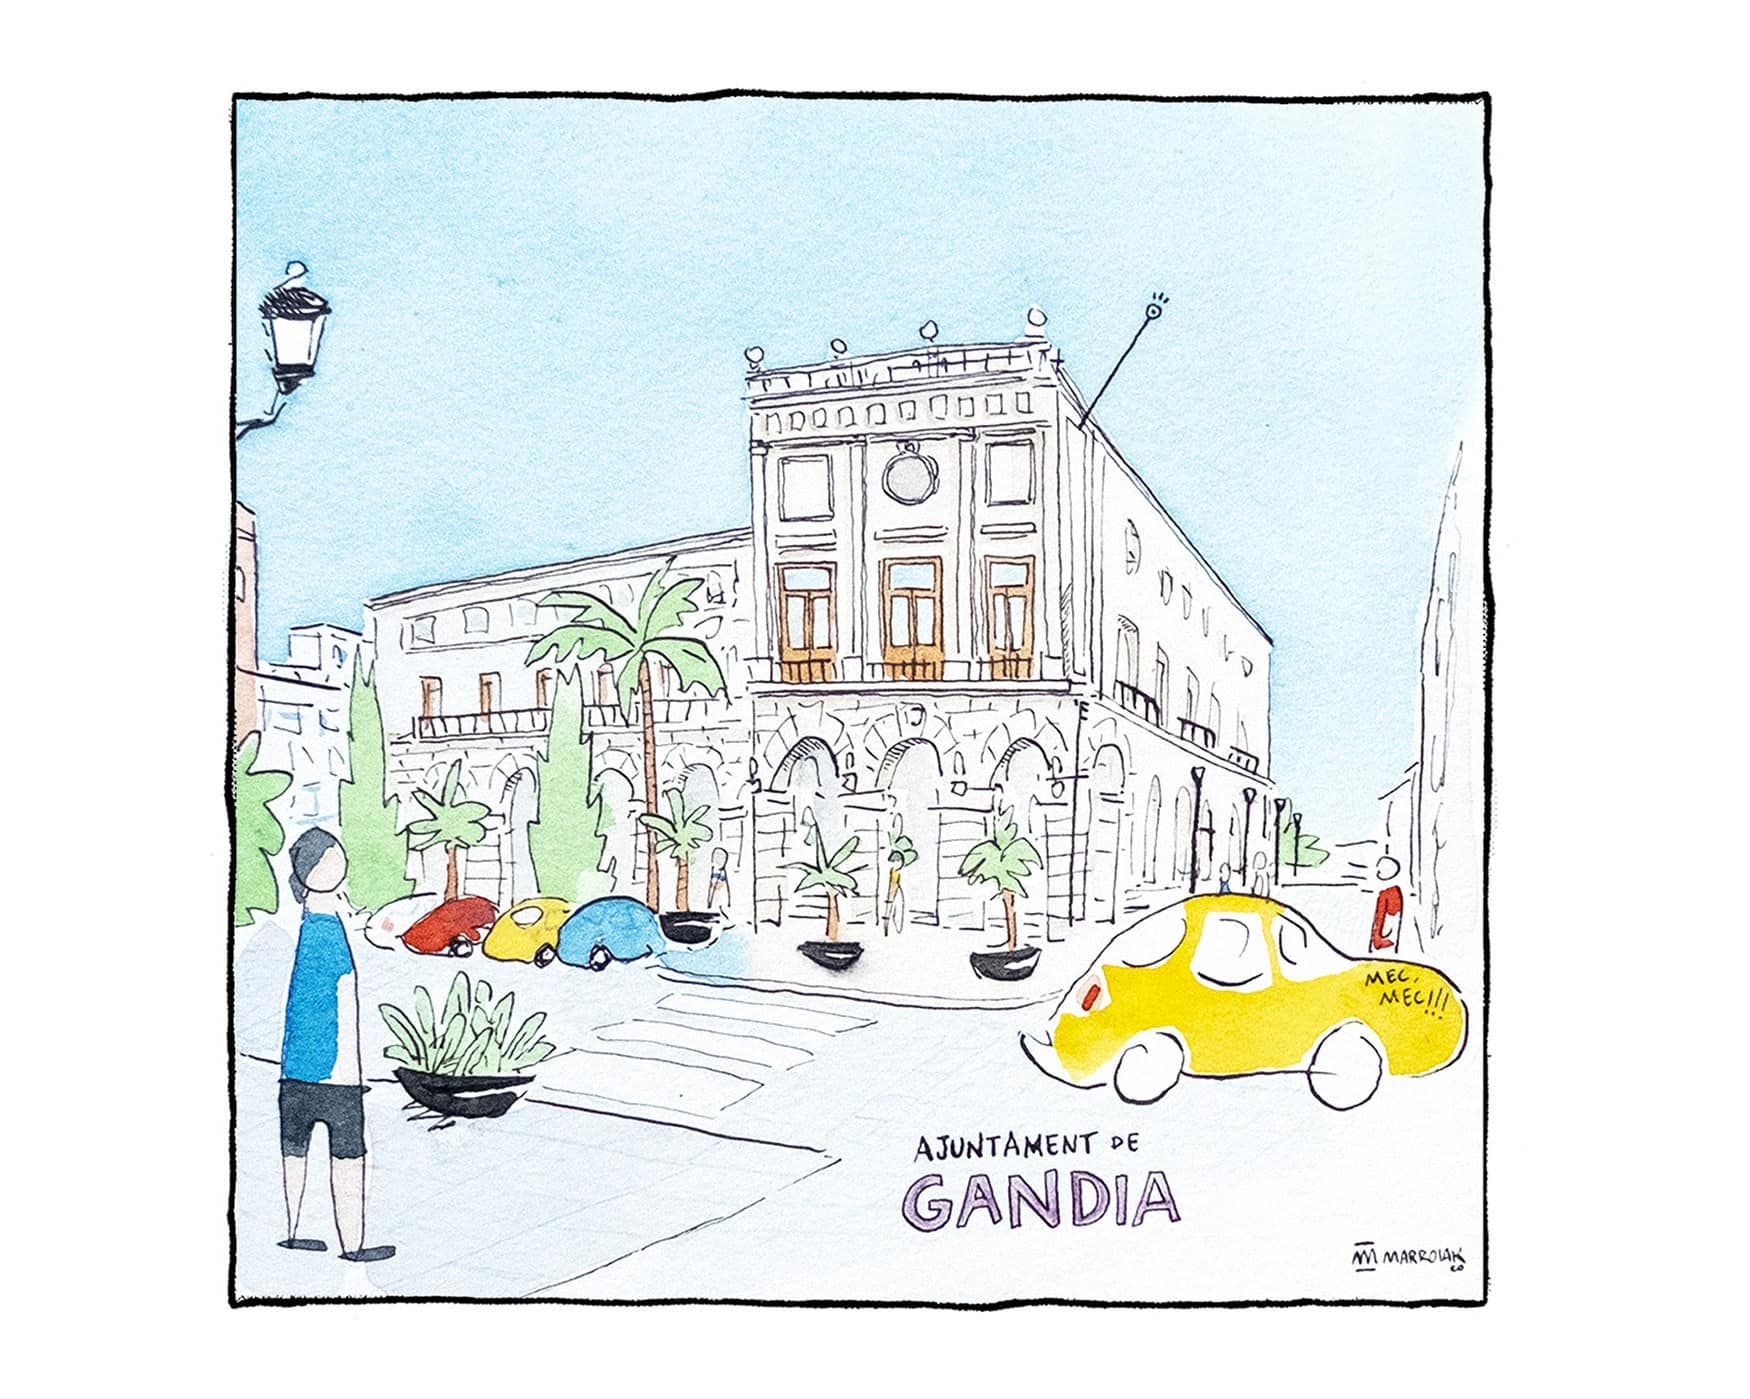 Ilustración en acuarela y tinta del Ayuntamiento de Gandía, La Safor (Valencia). Dibujo estilo urban sketchers